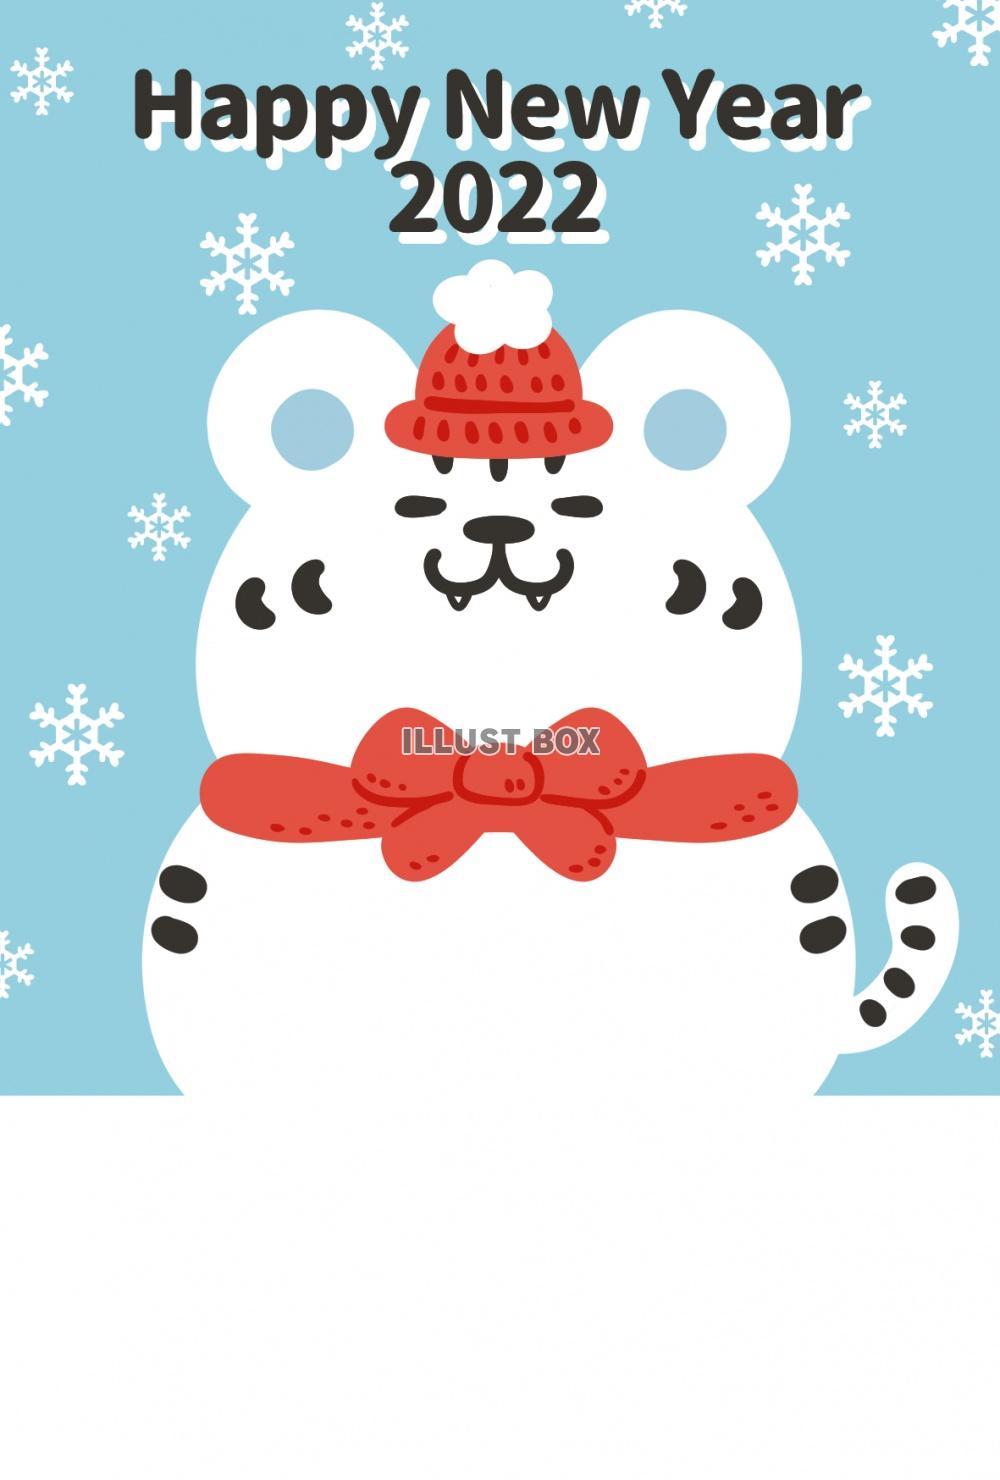 無料イラスト かわいい雰囲気の干支の虎の雪だるまと雪の結晶の年賀状 2